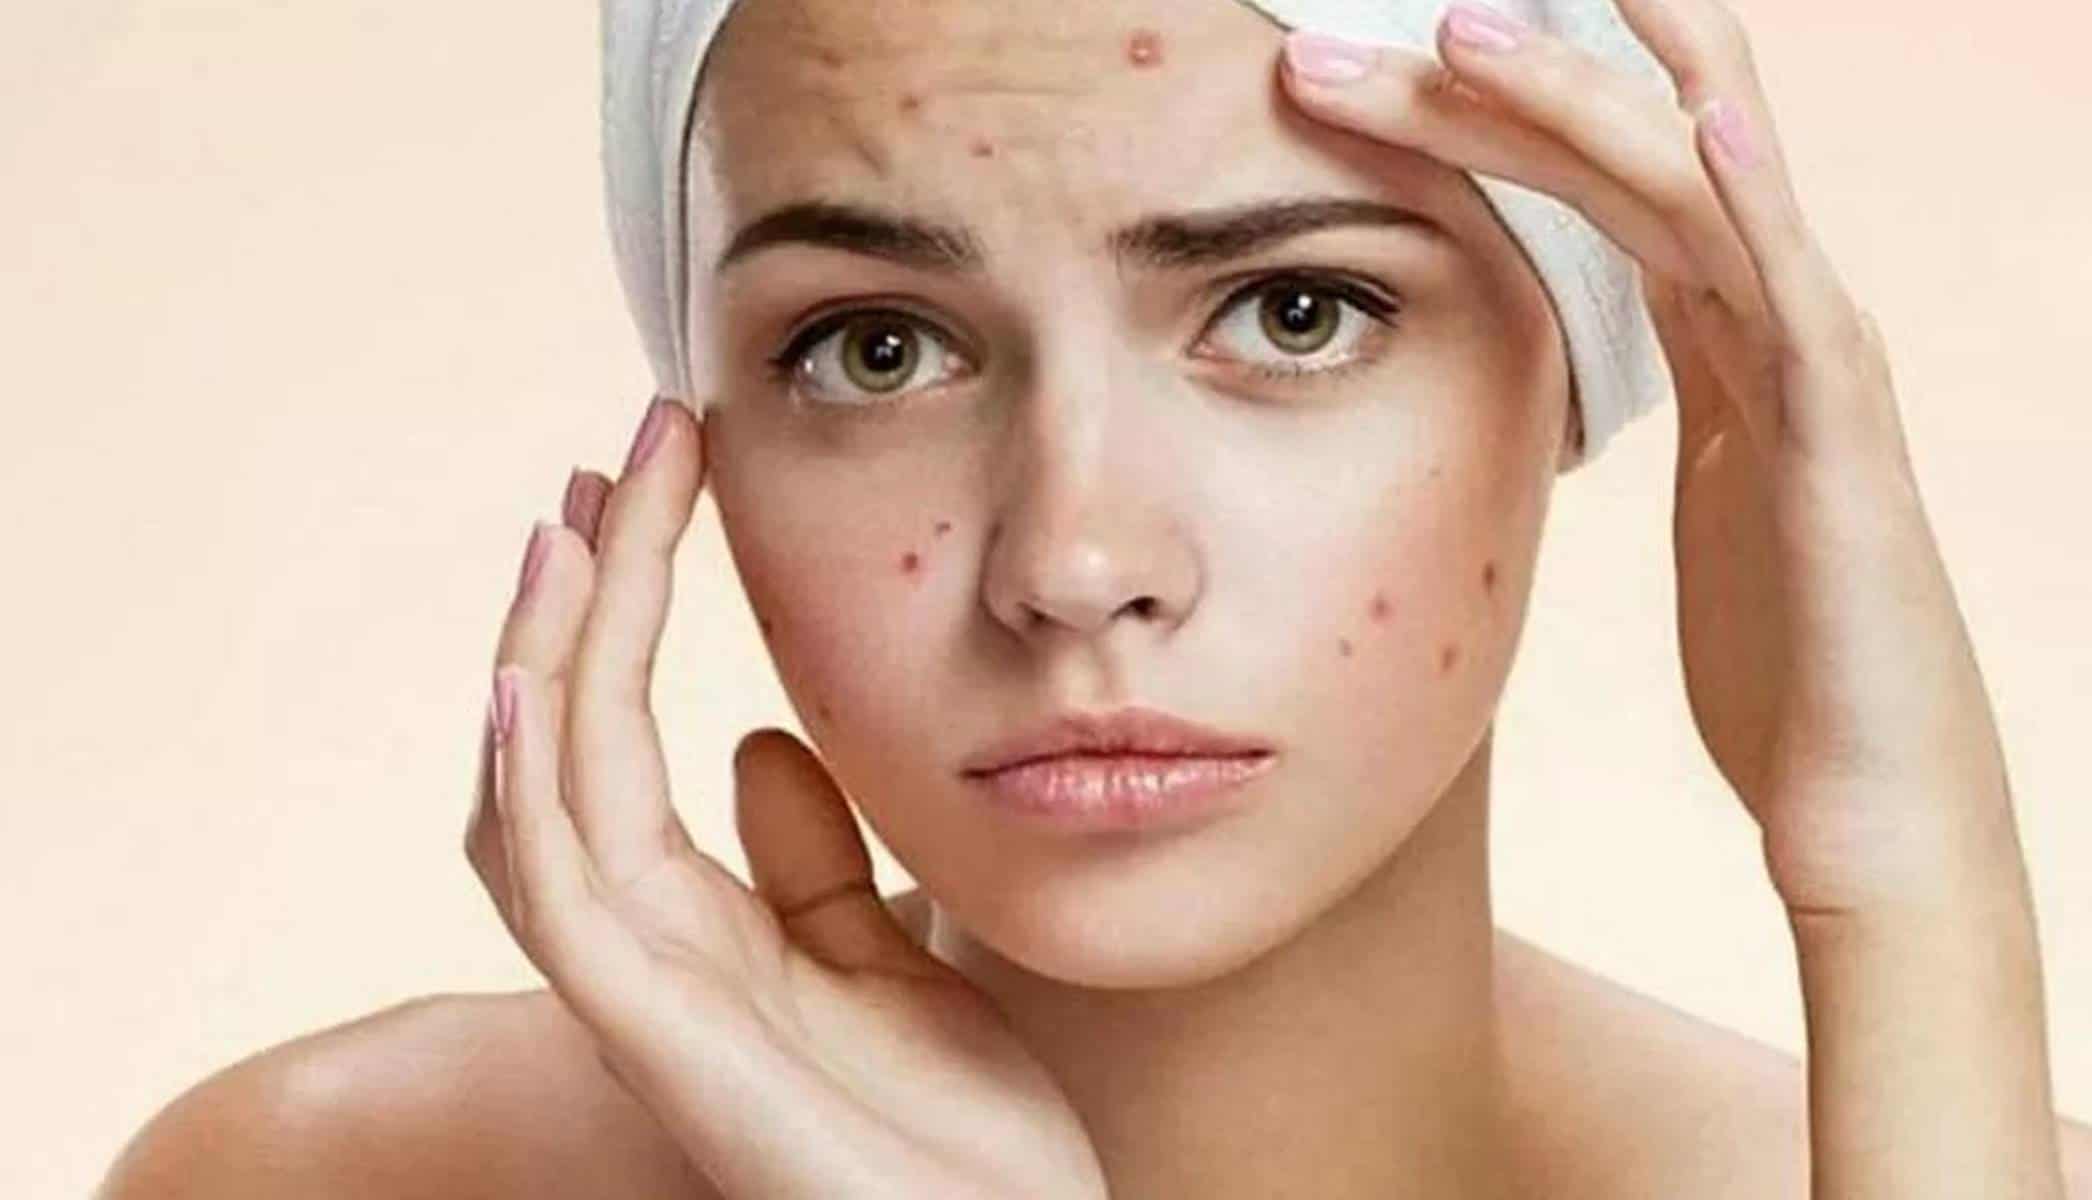 Nunca mais terá acne se usar esses 3 ingredientes caseiros eficazes